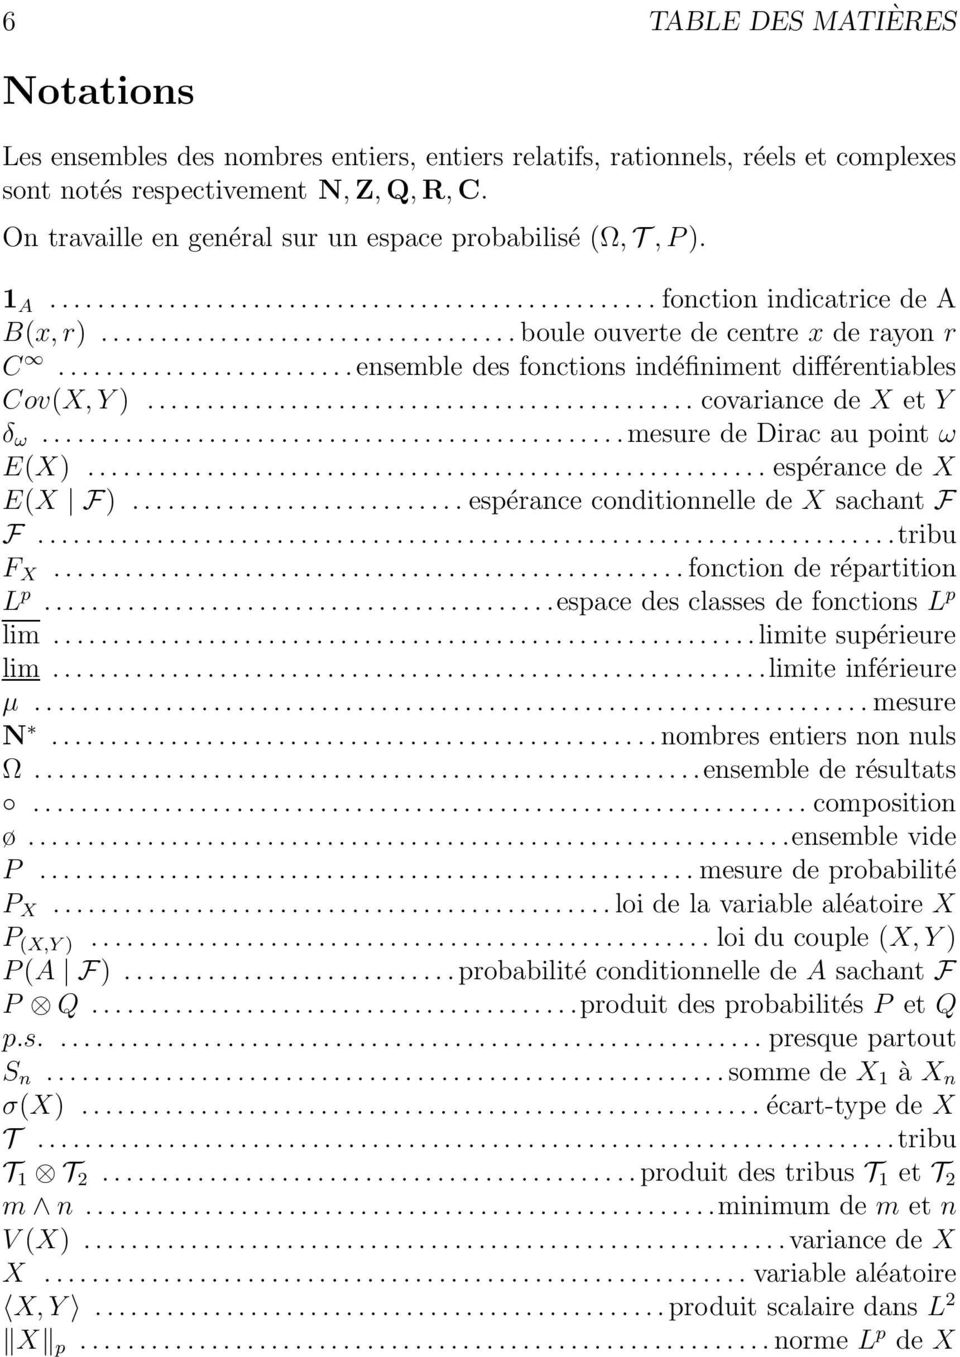 .. covariance de X et Y δ ω...mesure de Dirac au point ω E(X)... espérance de X E(X F)...espérance conditionnelle de X sachant F F...tribu F X...fonction de répartition L p.